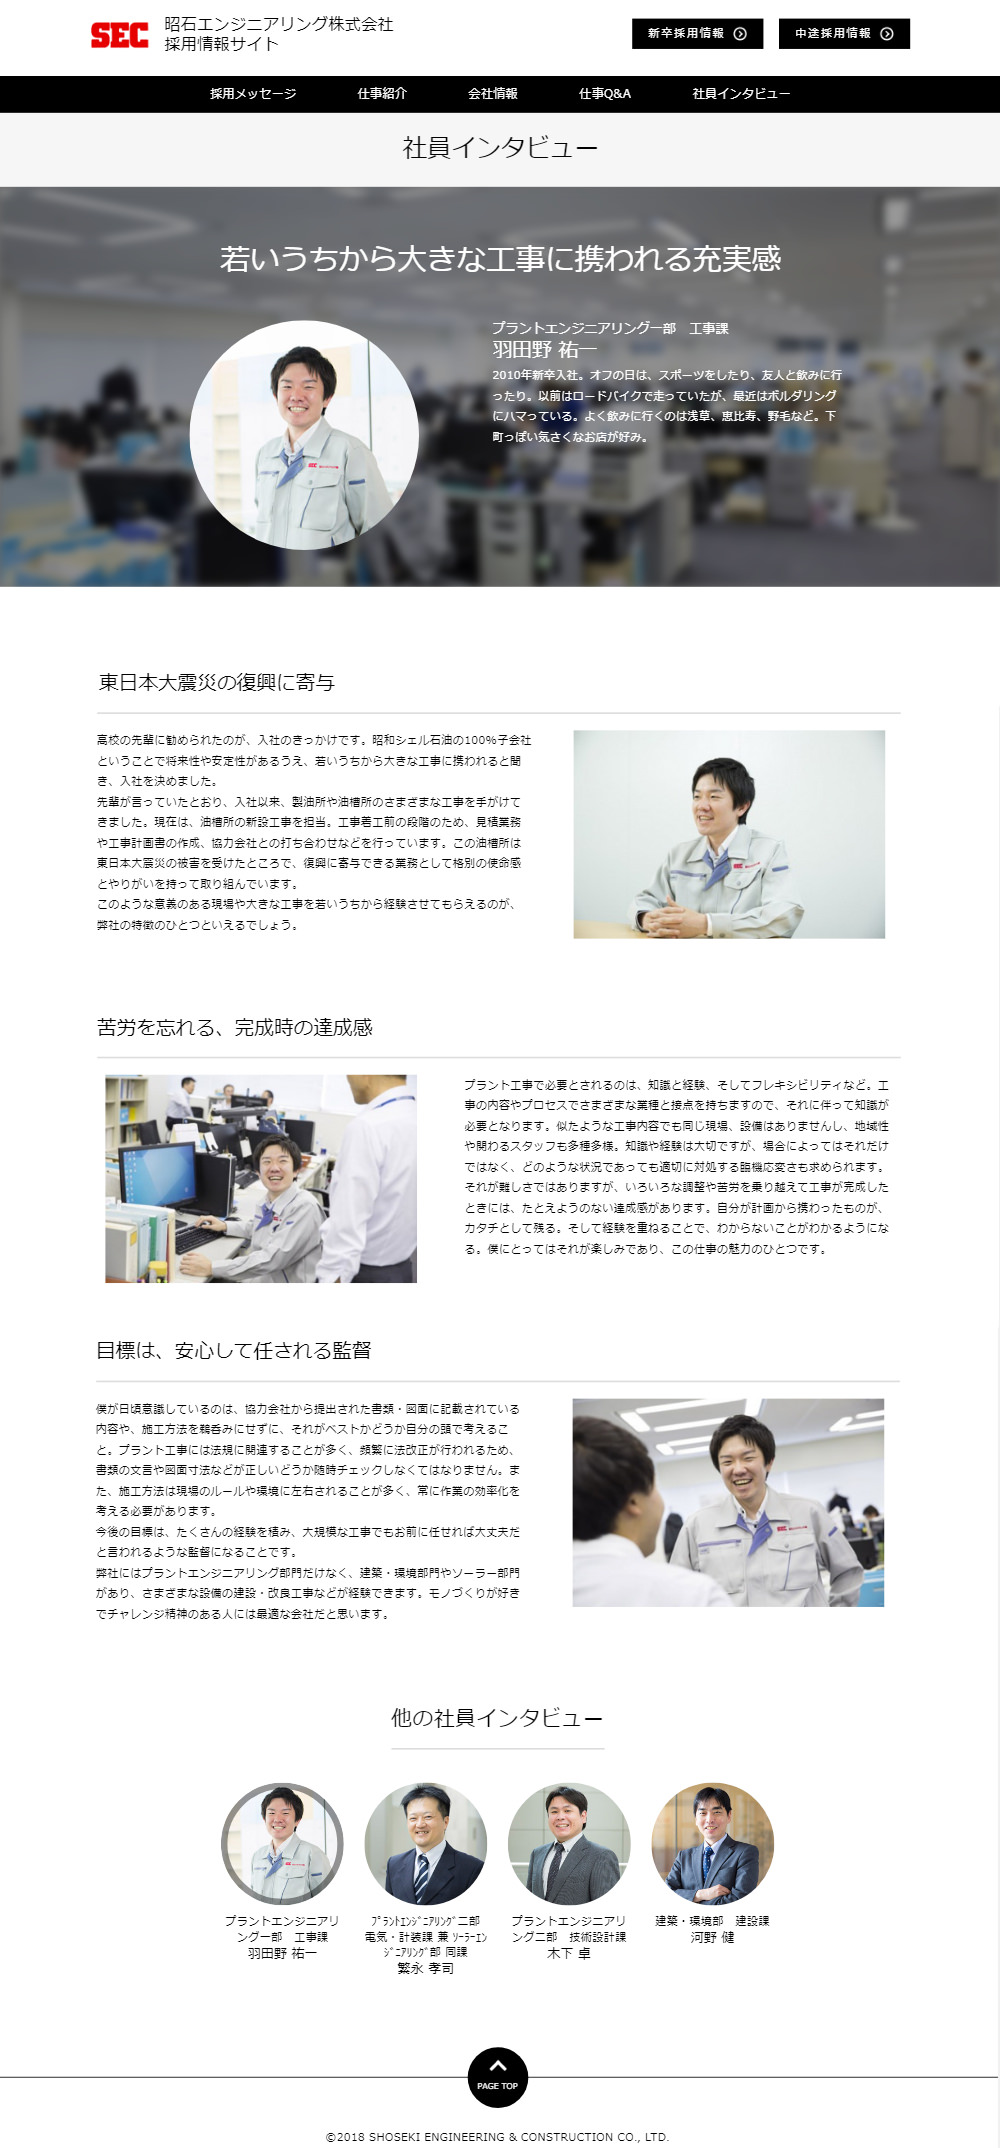 昭石エンジニアリング 様 - 採用情報サイト